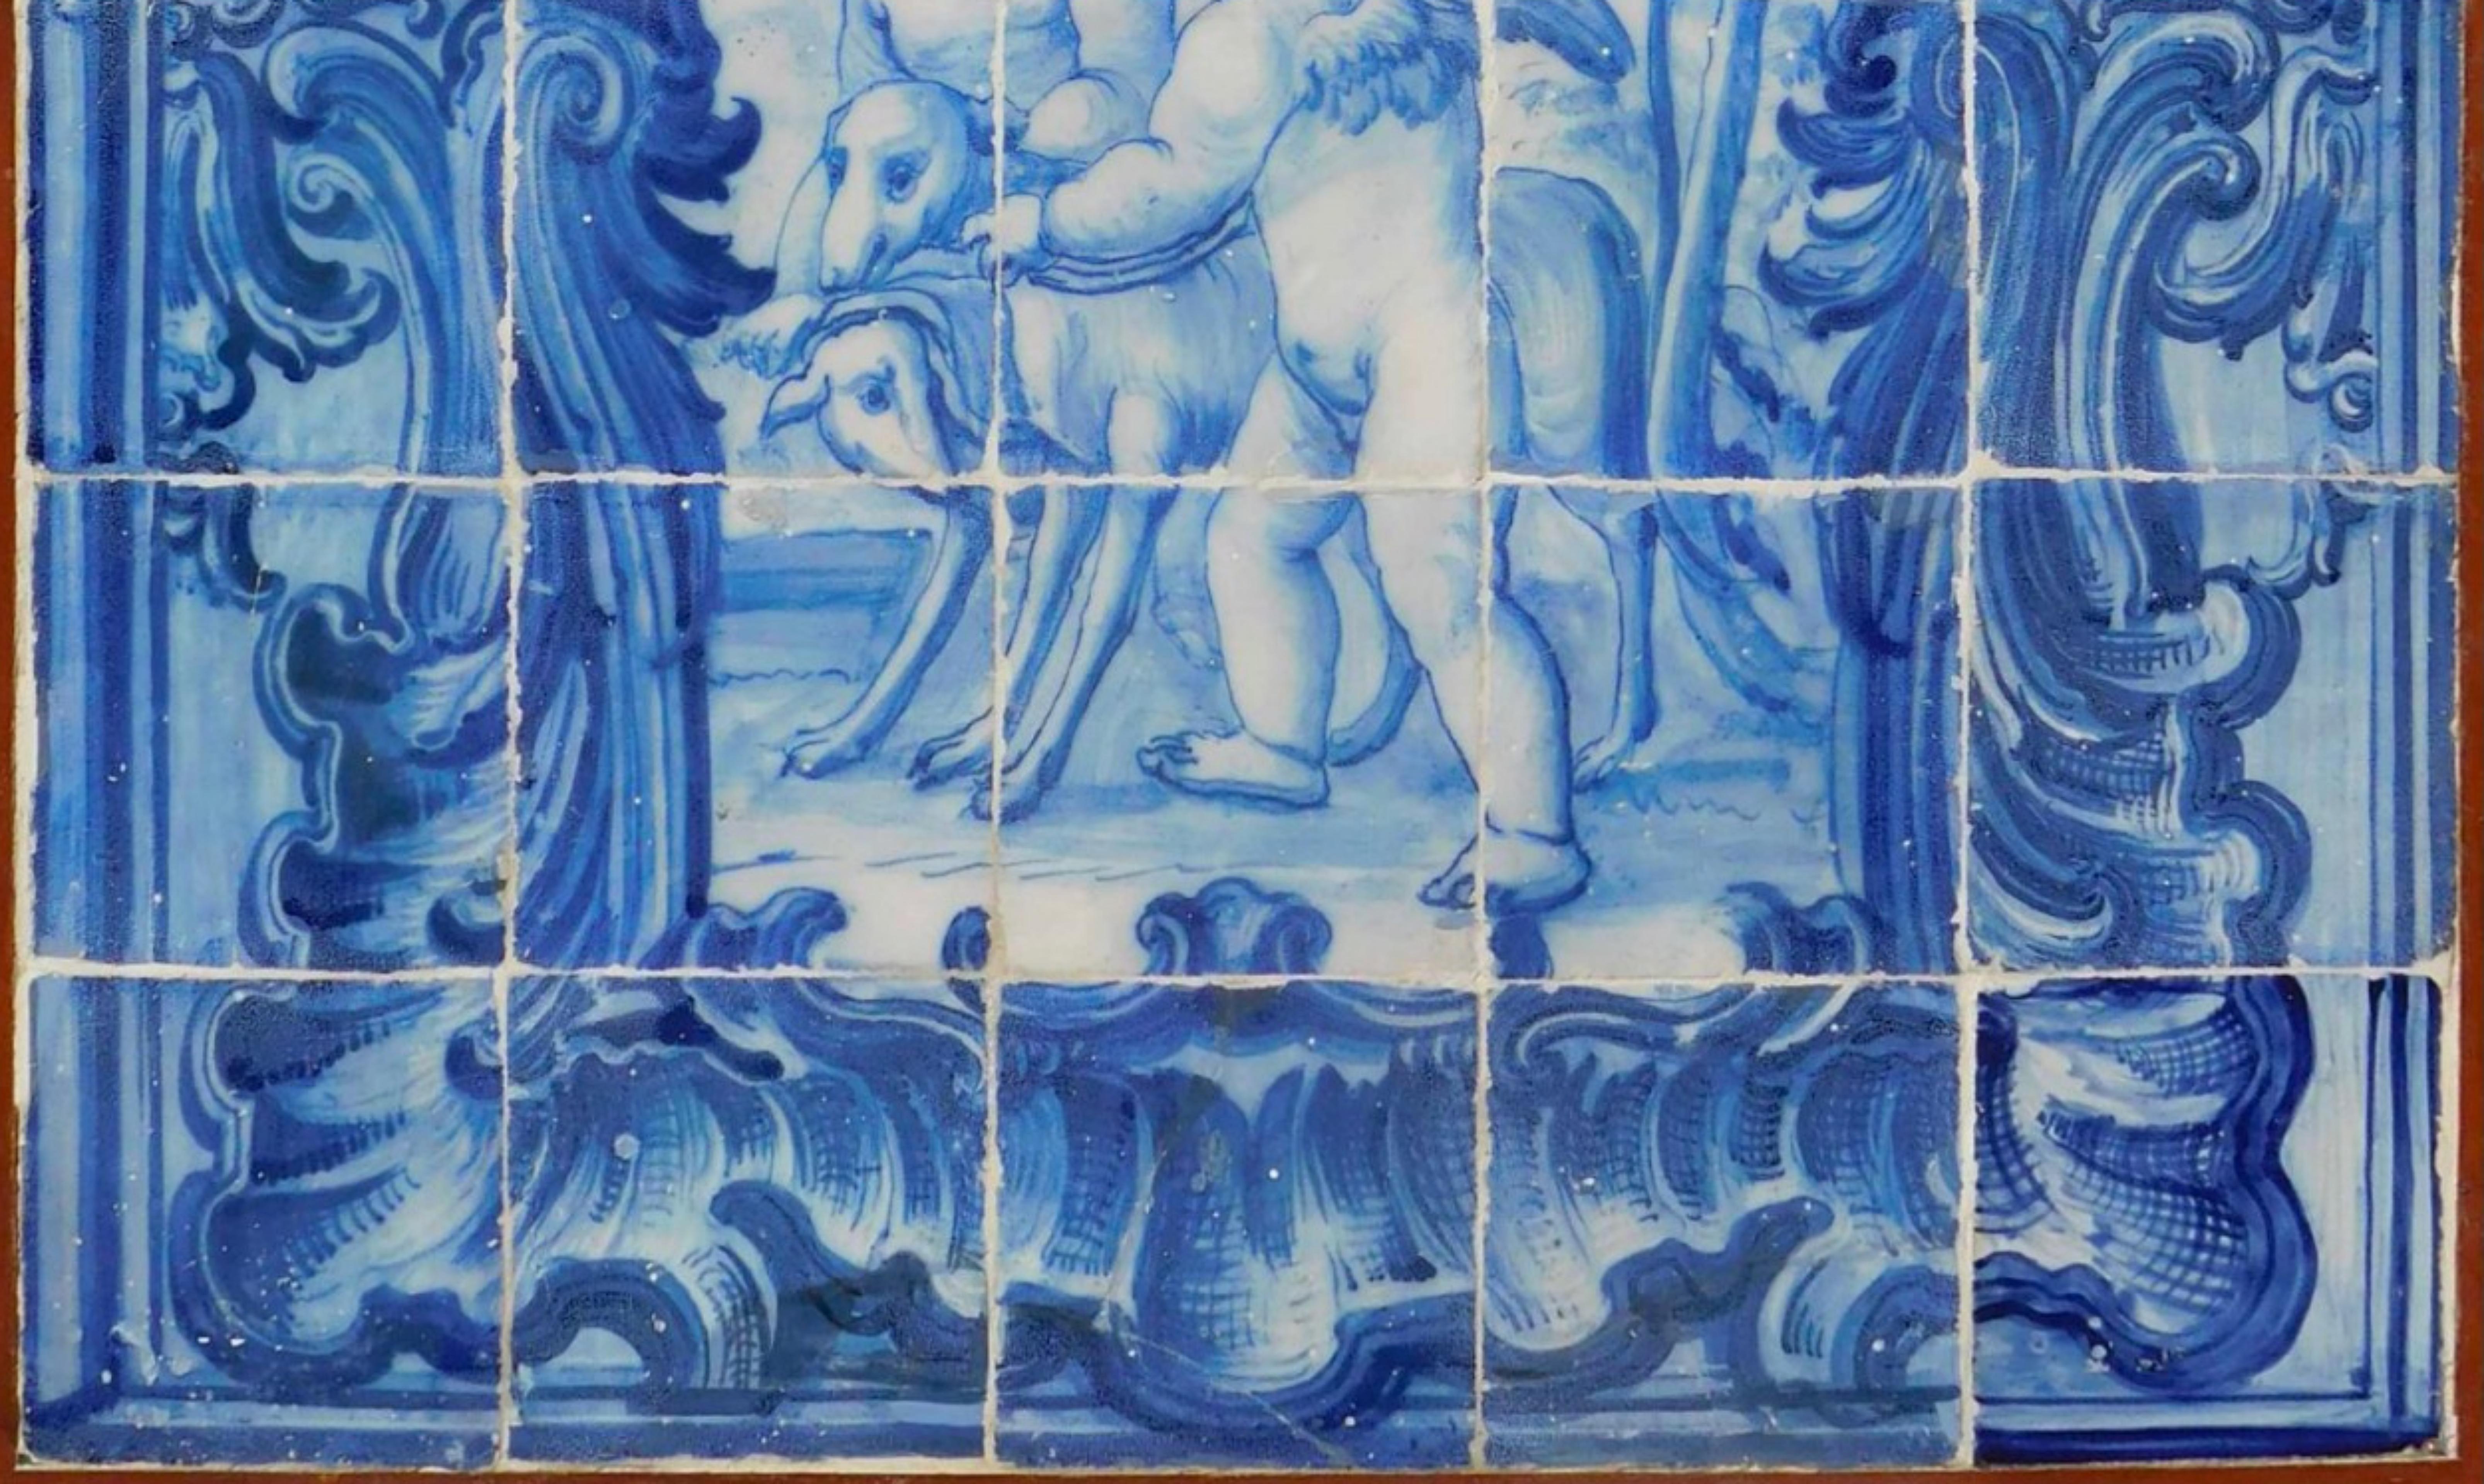 Panneau de carreaux portugais du 18e siècle « Anges »
70cm x 84cm
30 carreaux
bonnes conditions